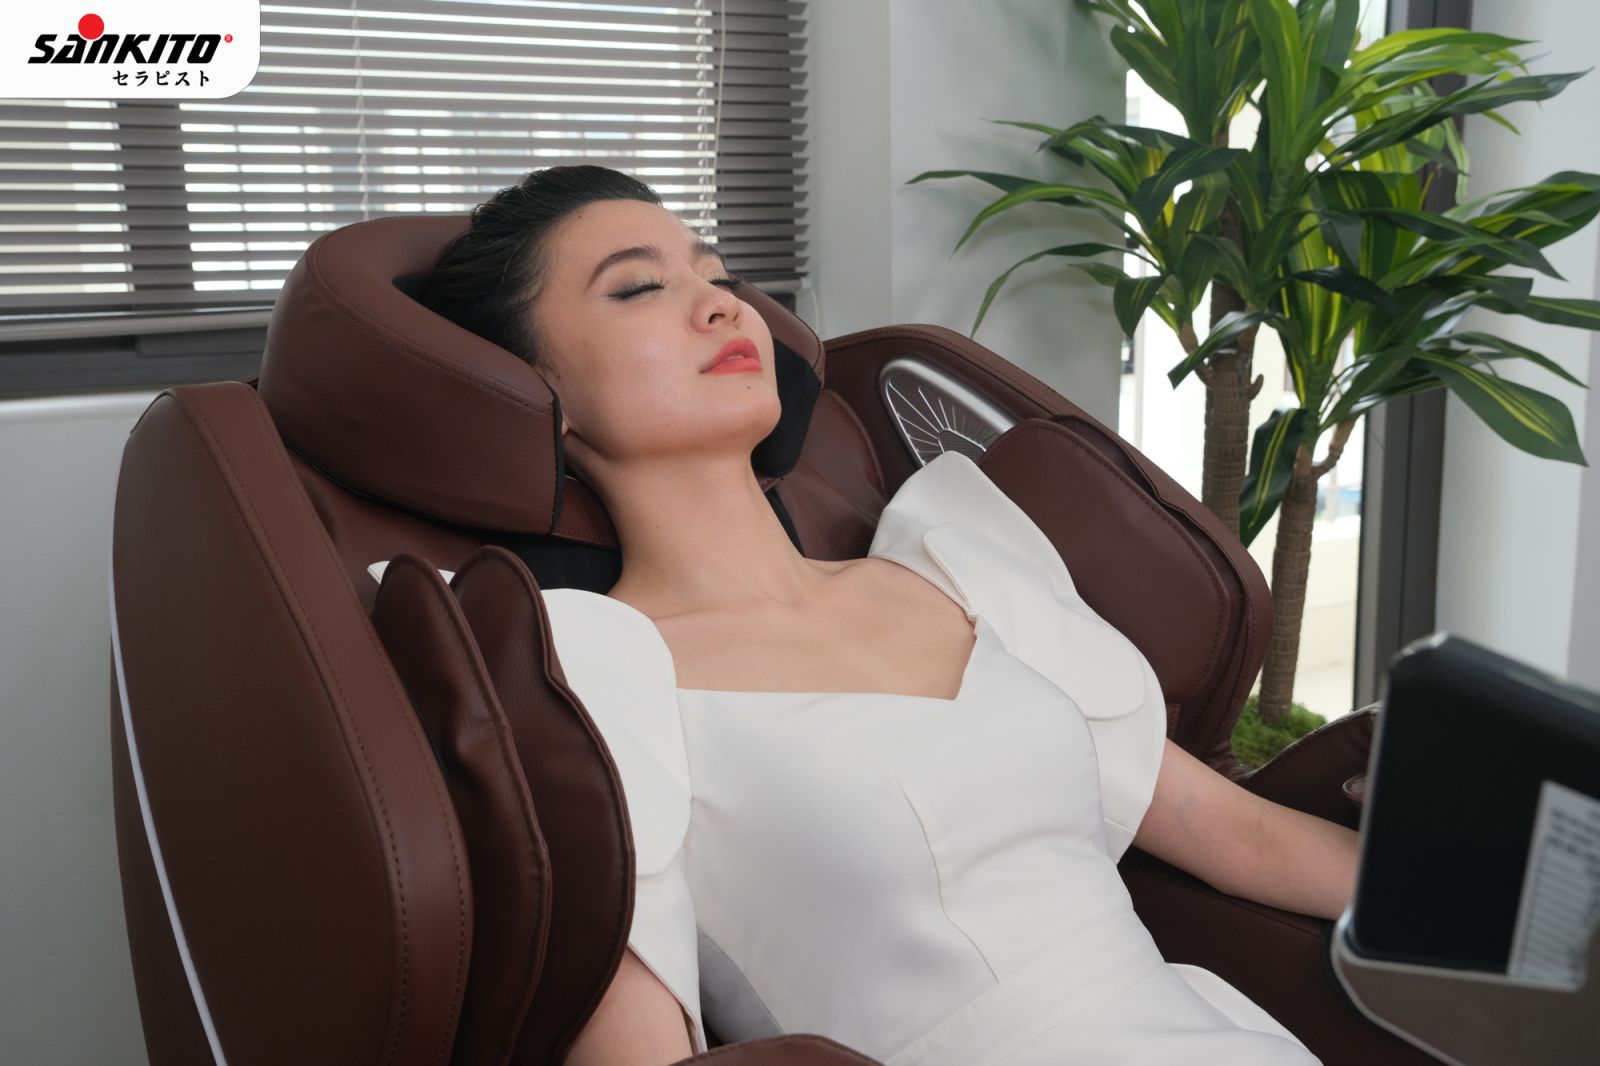 Sử dụng ghế massage Sankito